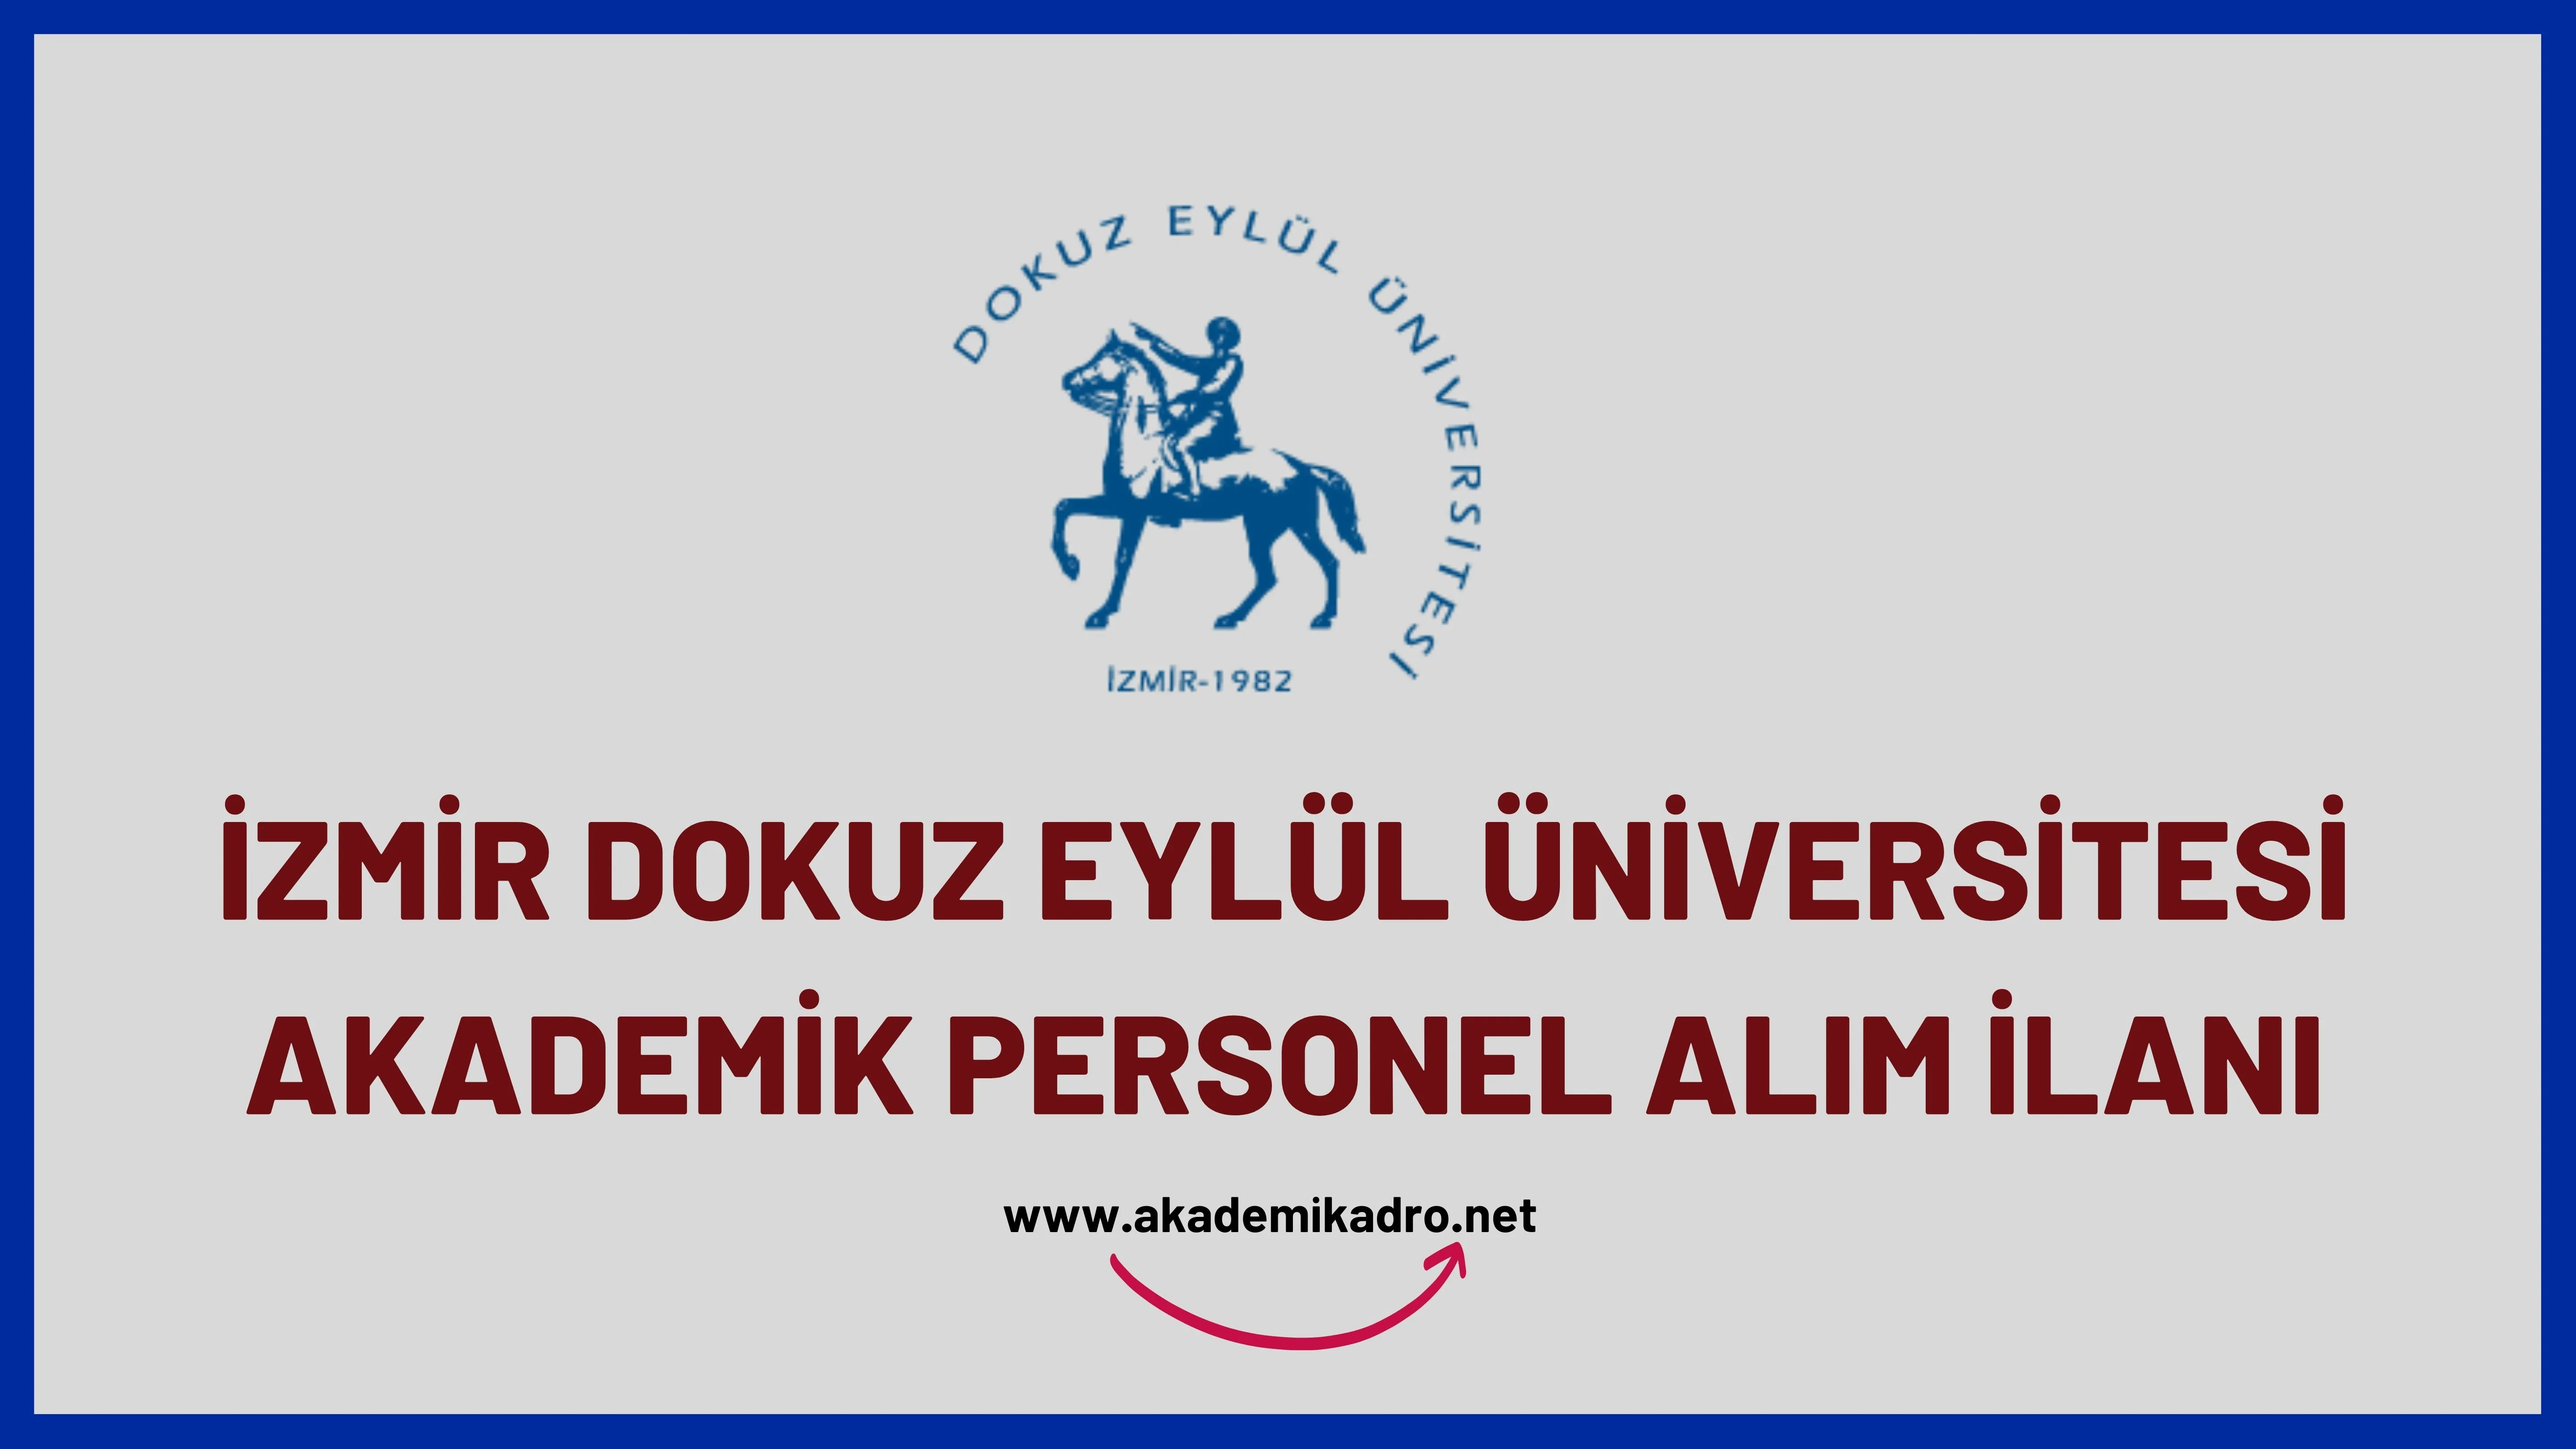 Dokuz Eylül Üniversitesi çeşitli branşlarda 13 akademik personel alacak.